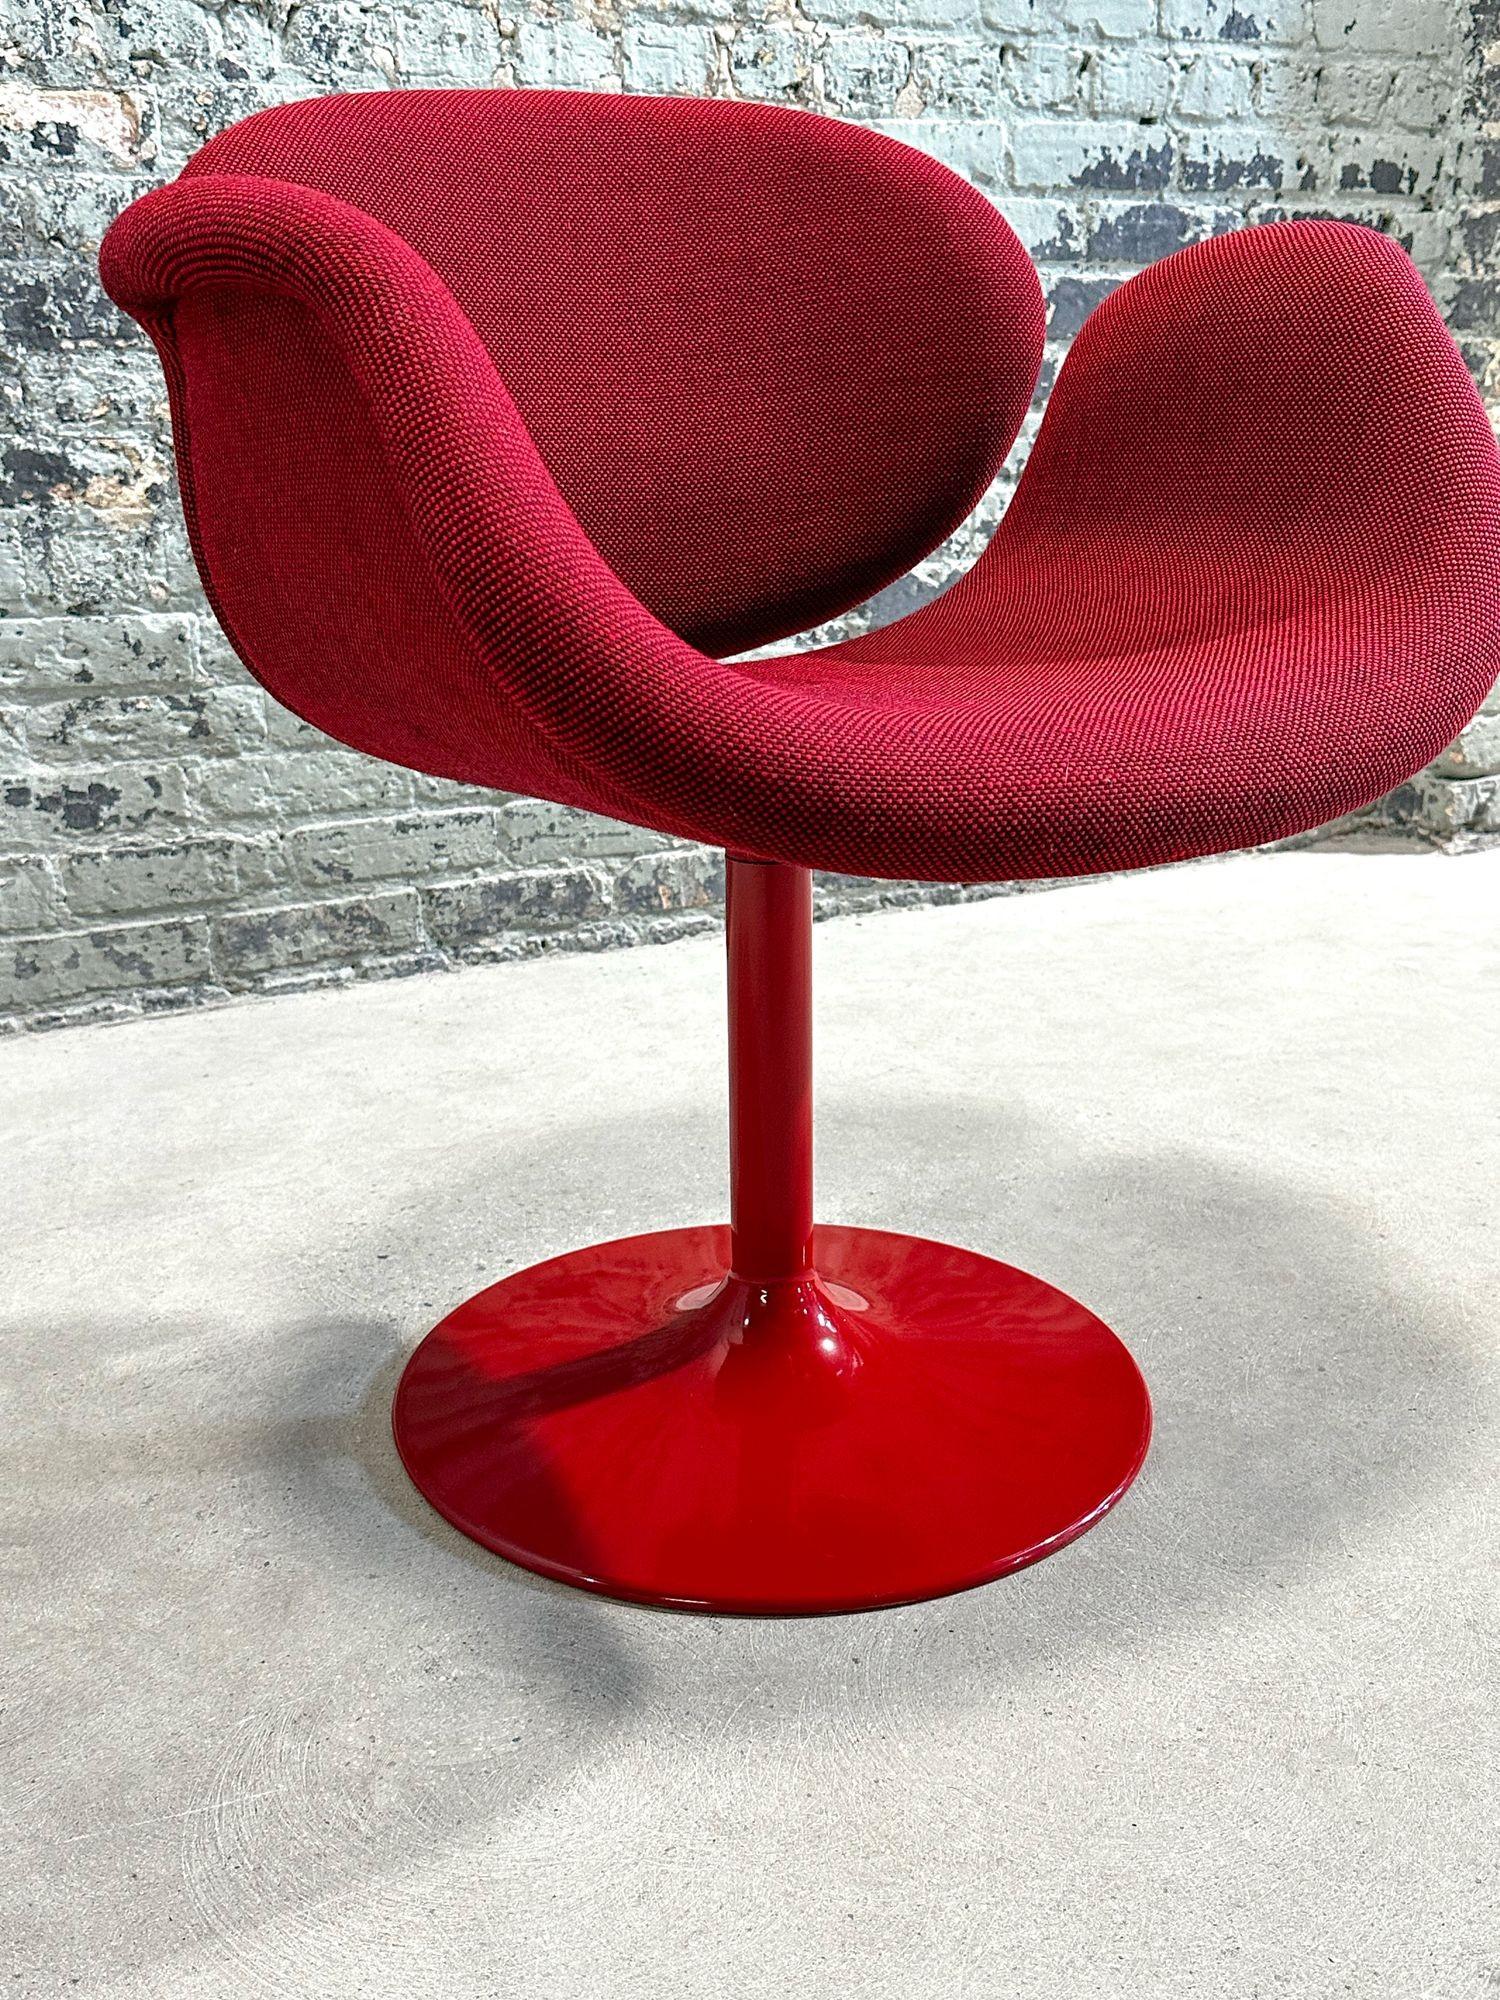 Pierre Paulin Tulip Midi Chair mit Aluminiumfuß, von Artifort 1960er Jahre. Der Stuhl ist ganz original mit einem roten Aluminiumfuß.
Maße: 27